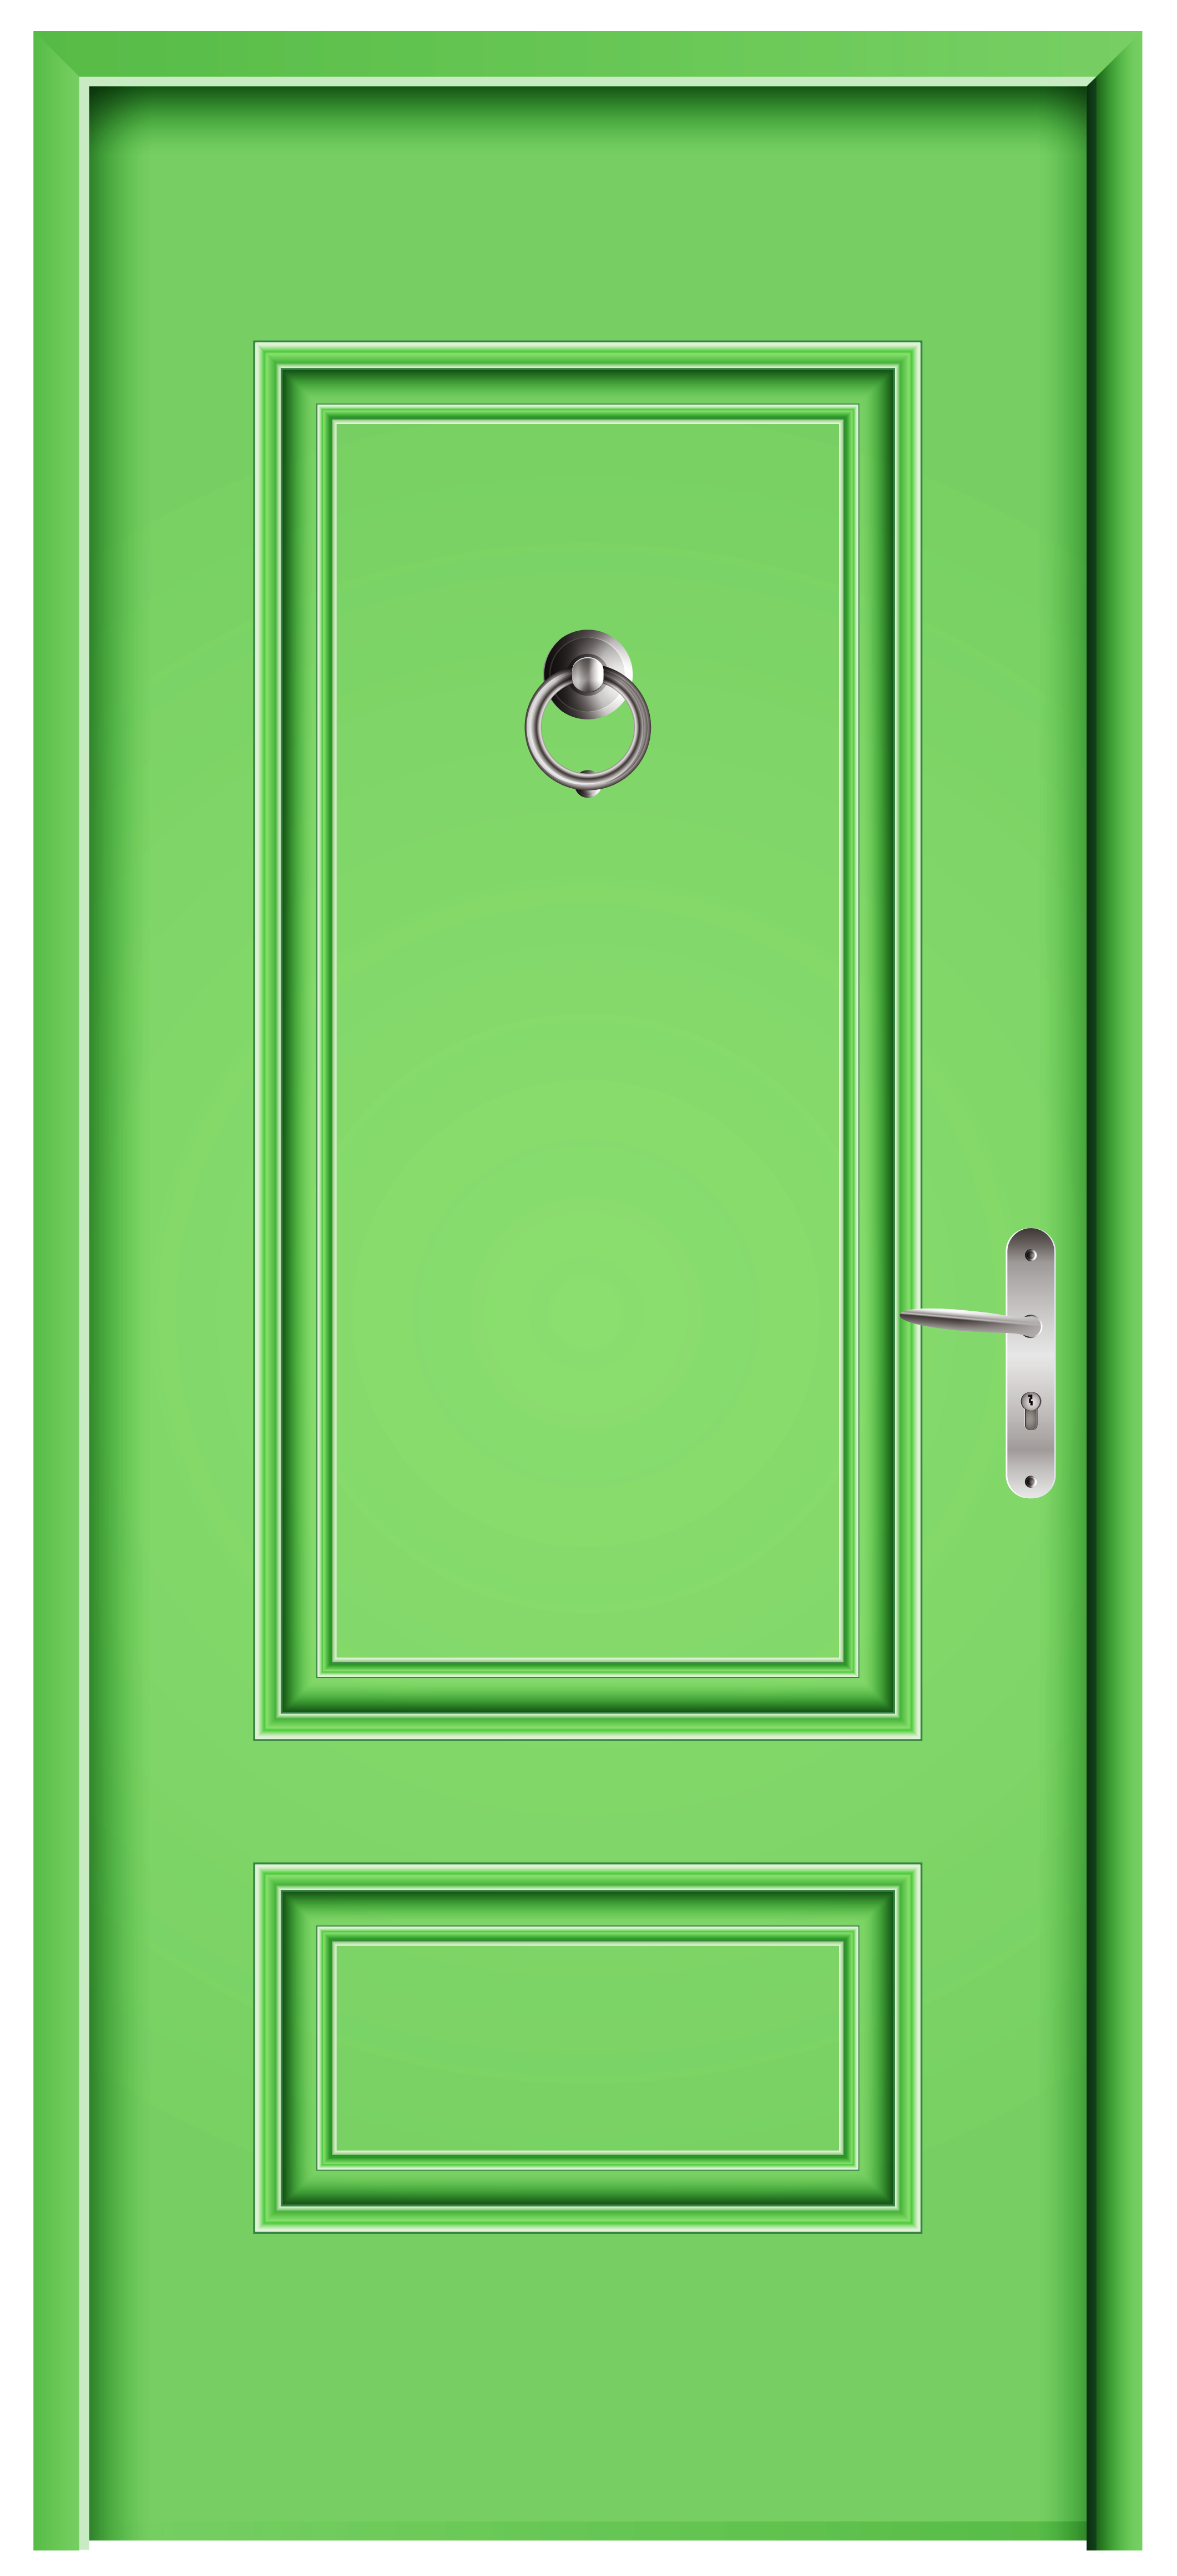 Front door green.